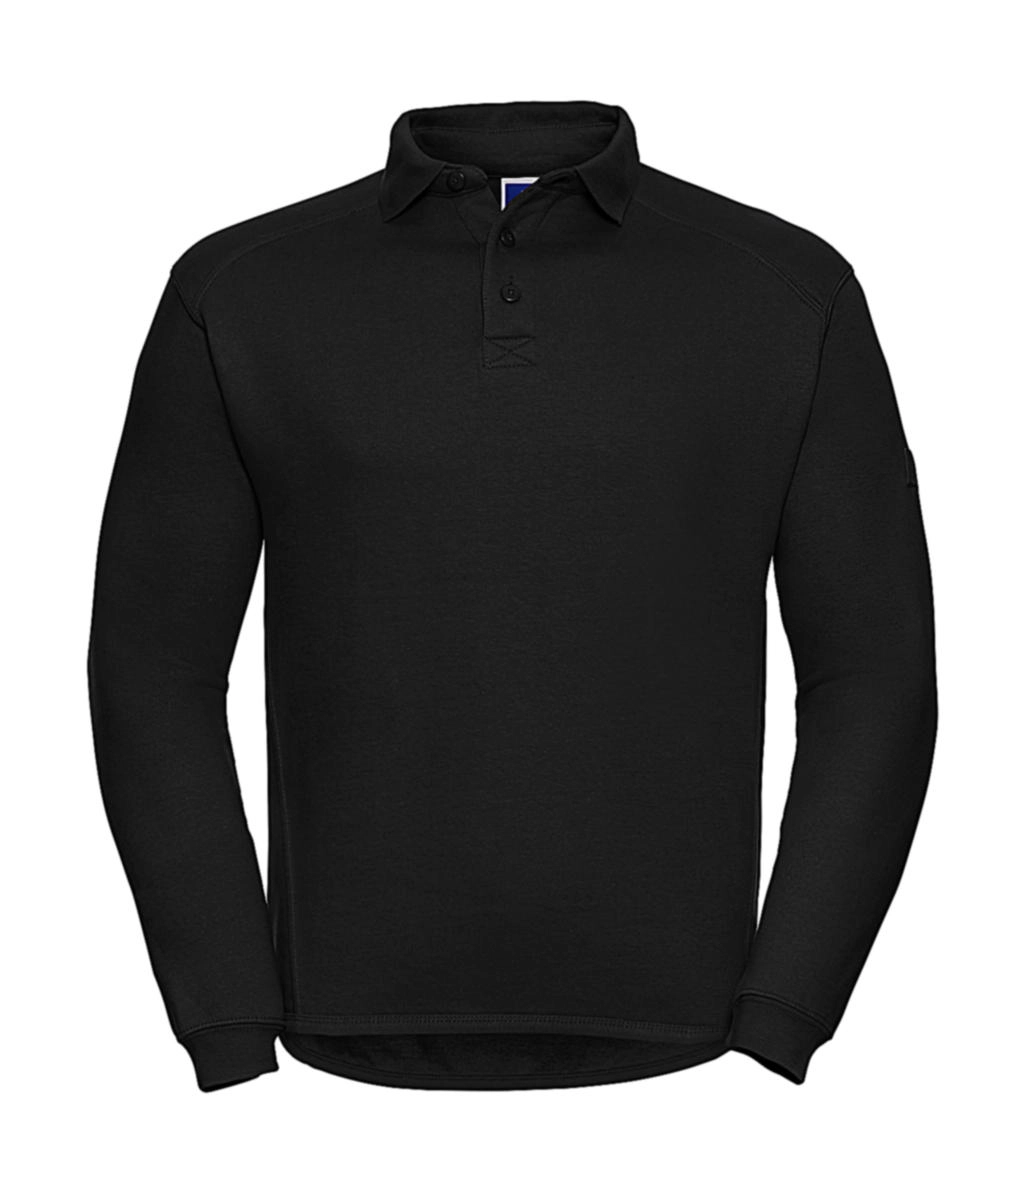 Heavy Duty Collar Sweatshirt zum Besticken und Bedrucken in der Farbe Black mit Ihren Logo, Schriftzug oder Motiv.